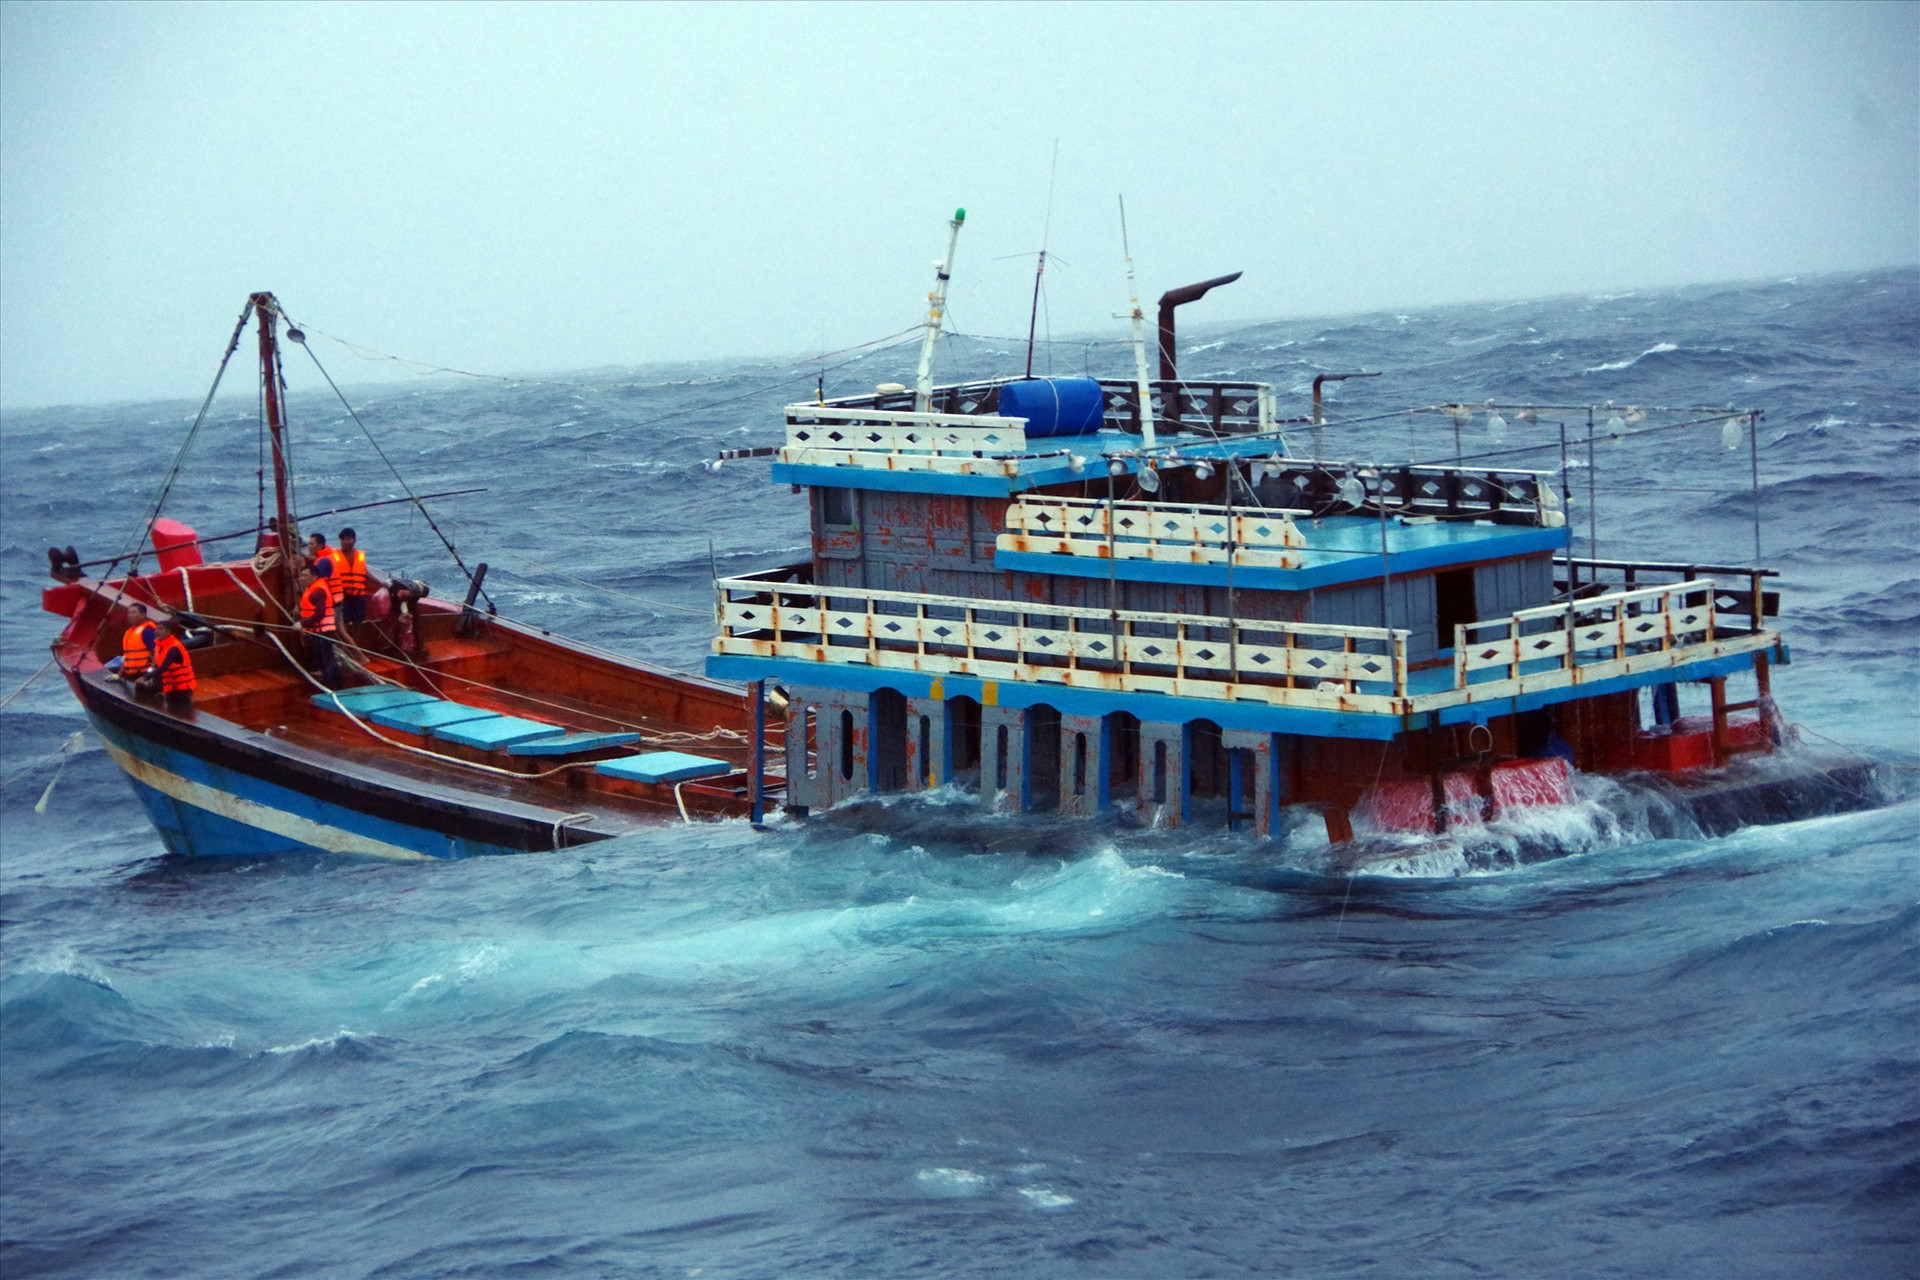 Tàu cá QNg-95058 TS của ngư dân Quảng Ngãi được ứng cứu kịp thời trong bão số 5. Ảnh: N.T